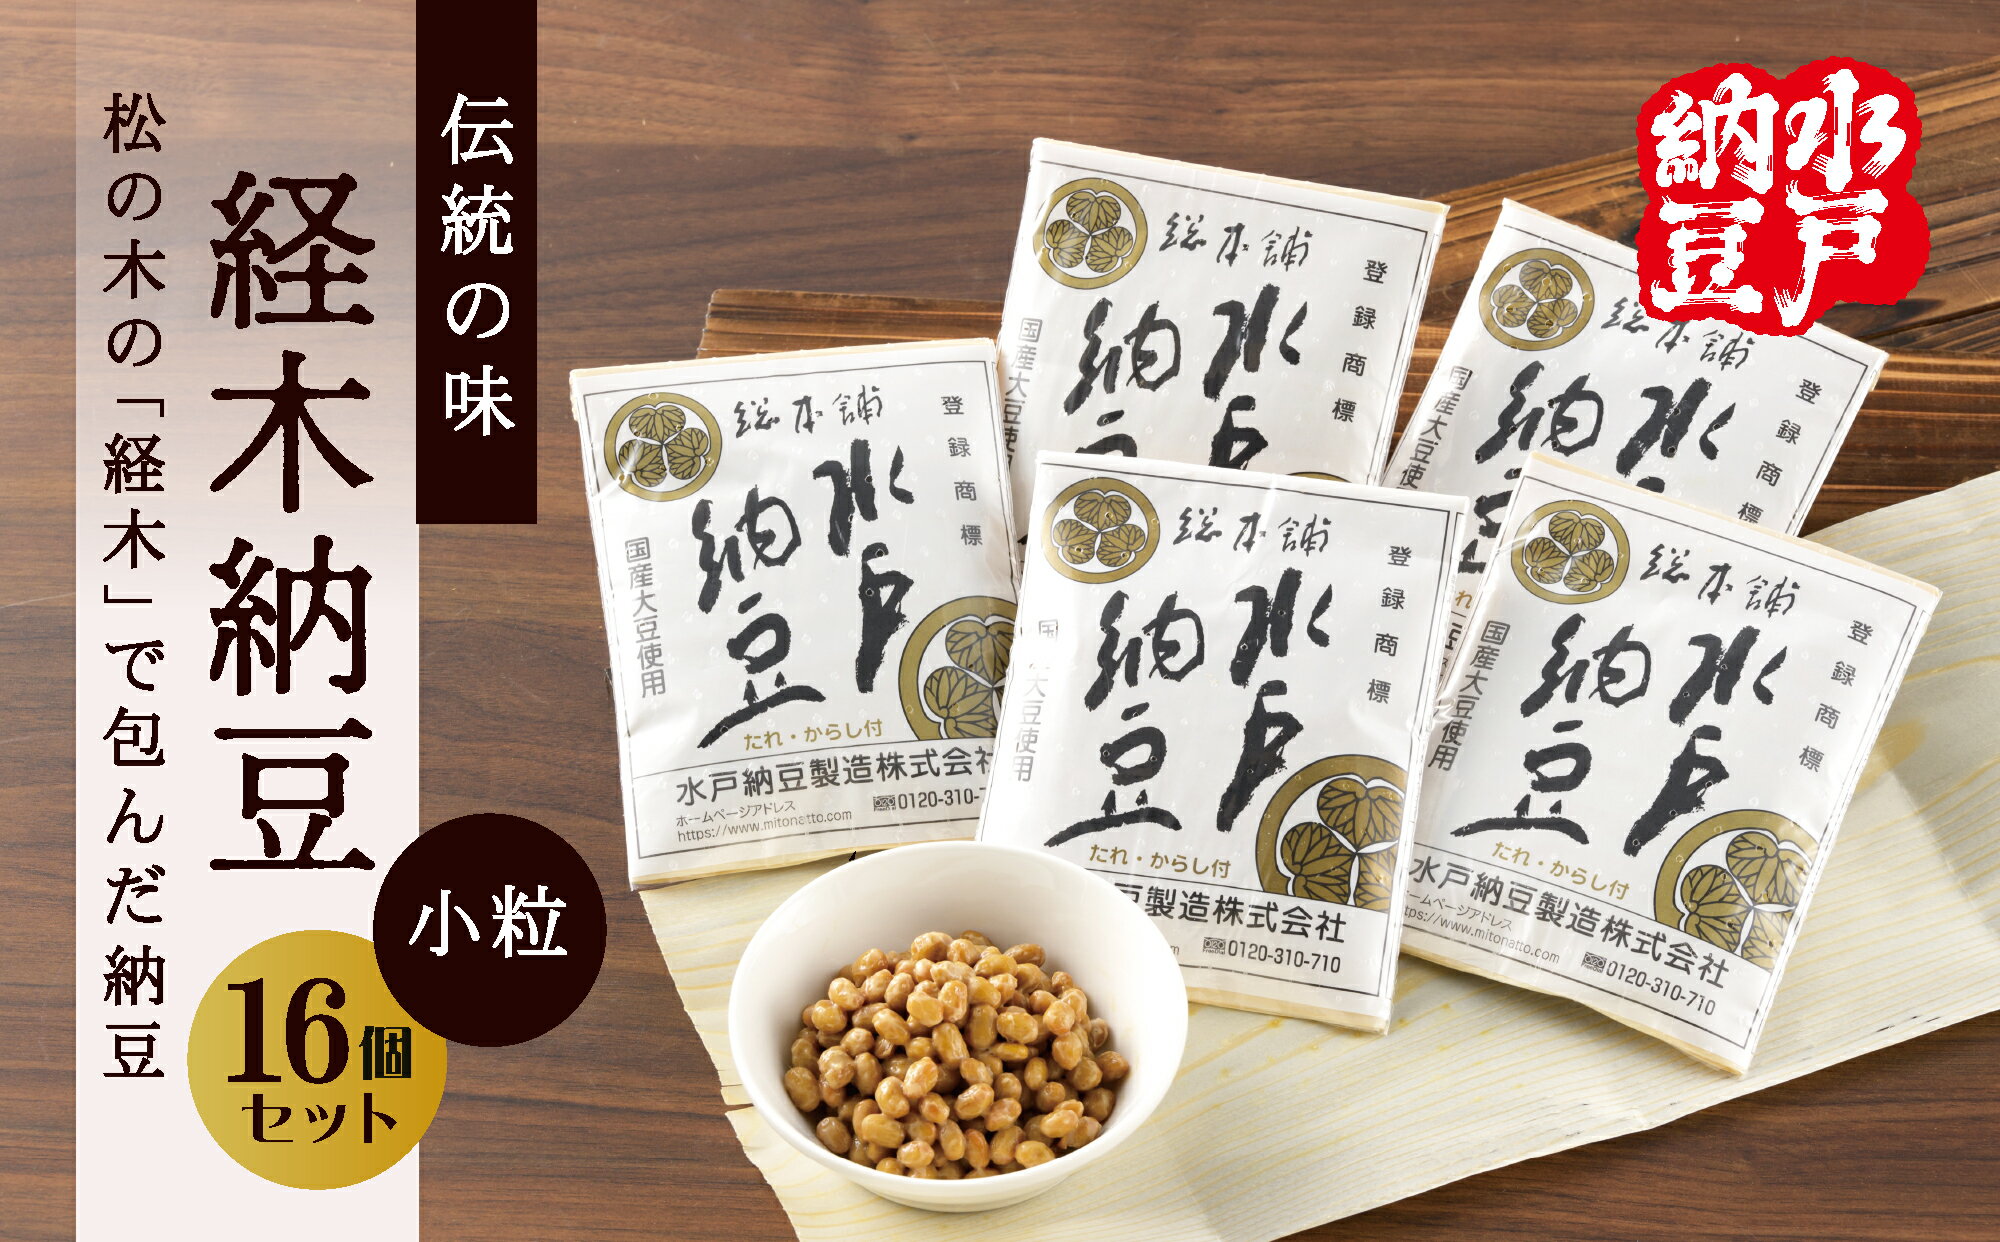 [水戸納豆]伝統の味 経木納豆 16個入り(DL-8)